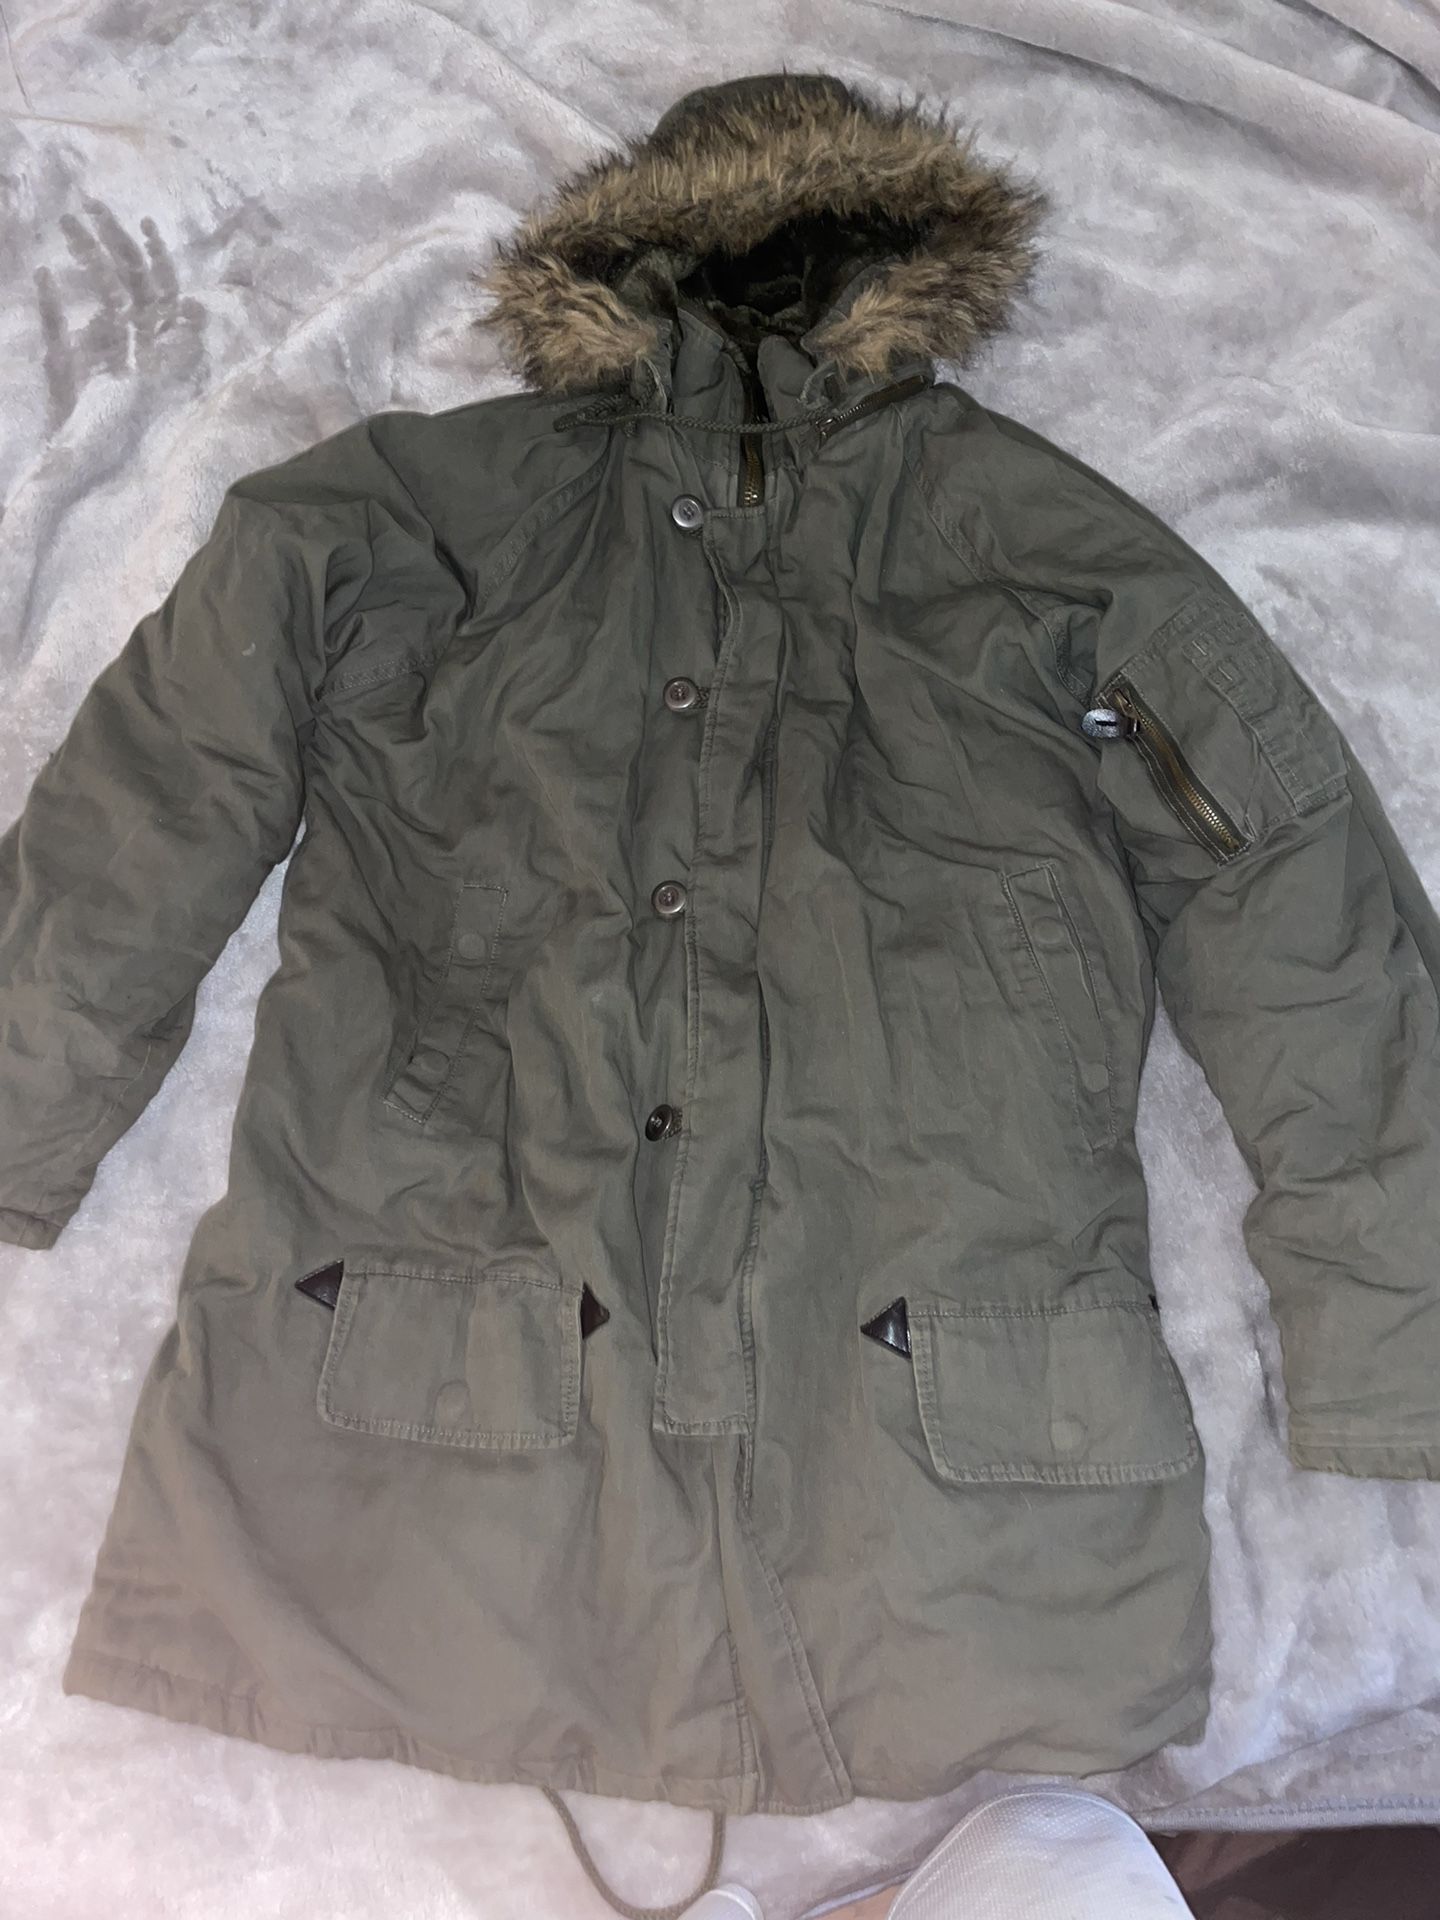 Parka Jacket Extreme Weather Fur Coat Size Medium 100$